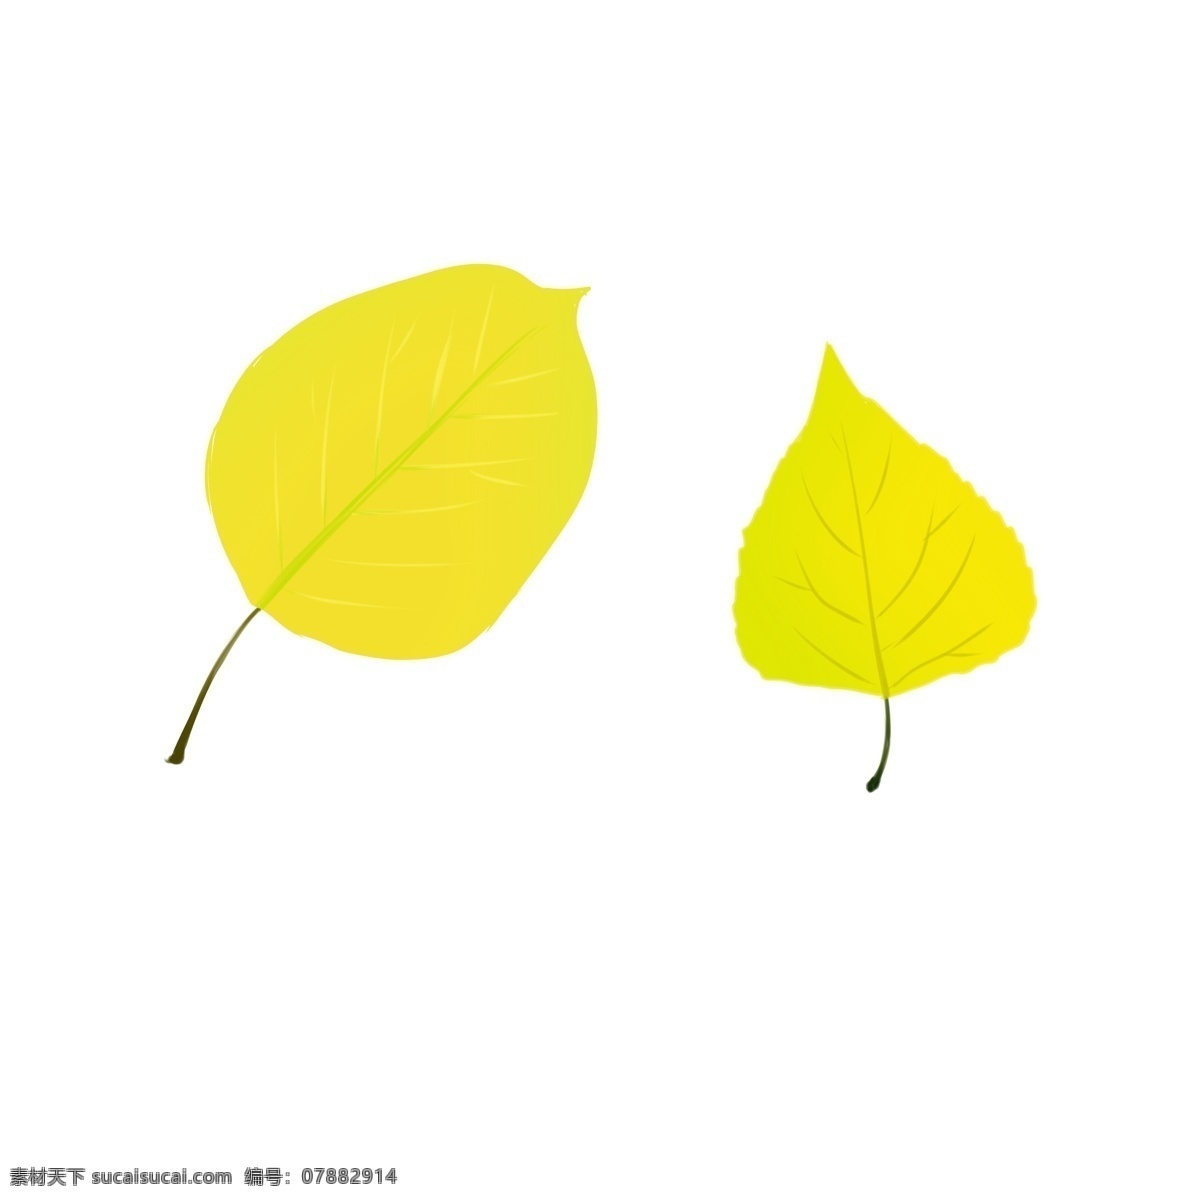 黄色 秋风 落叶 手绘 秋天 叶子 树叶 深秋 插画 背景装饰 大自然 金秋